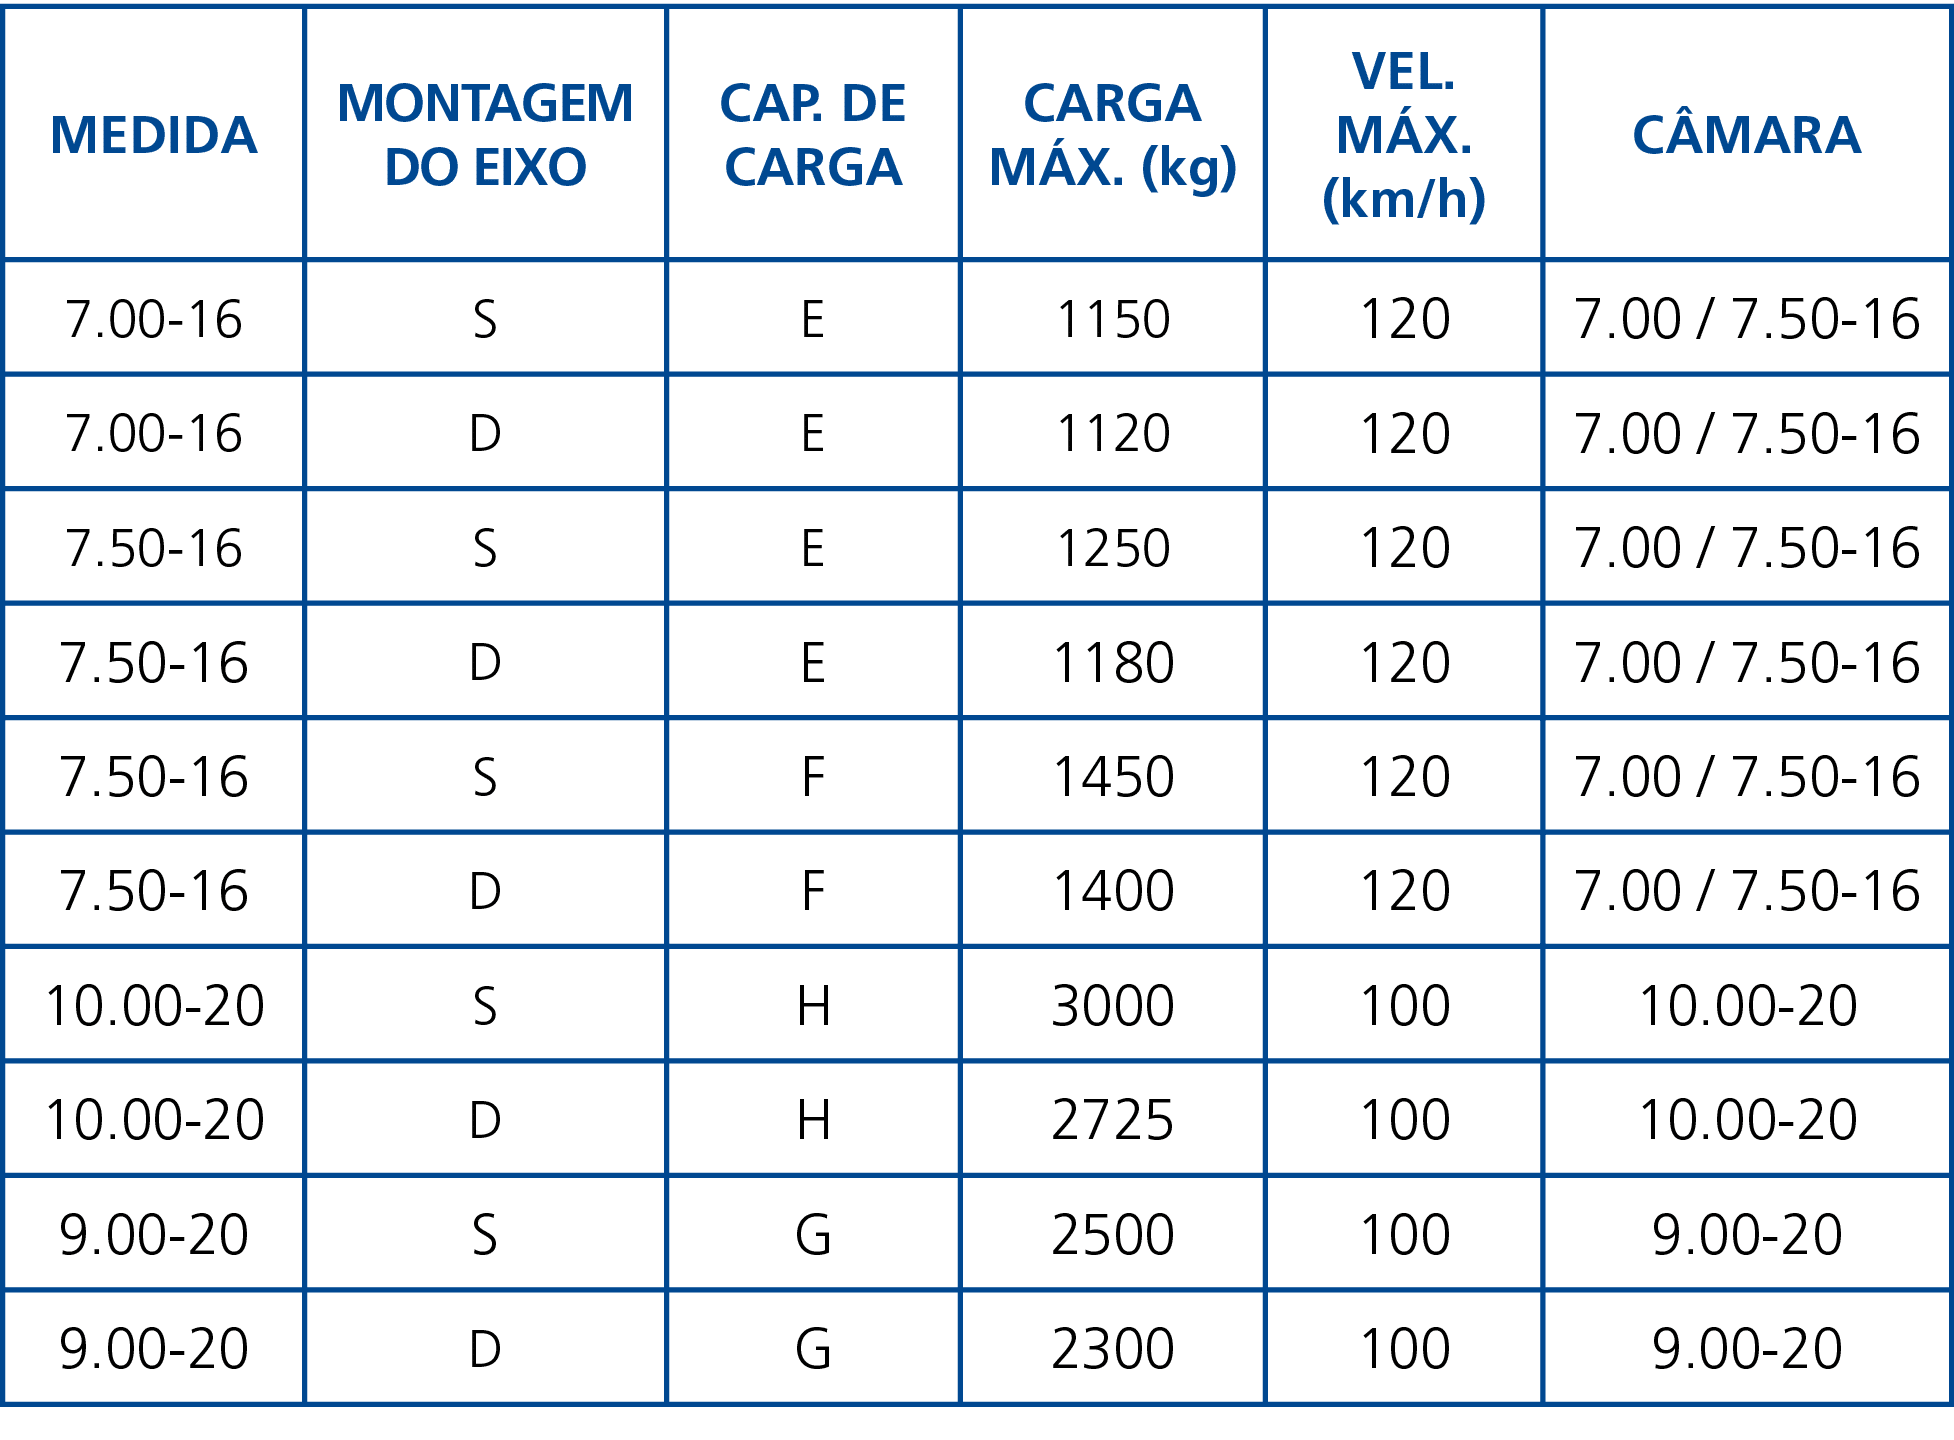 Medida,Montagem do Eixo,Cap  de Carga,Carga Máx  (kg),Vel  Máx  (km h),Câmara,7 00-16,S,E,1150,120,7 00   7 50-16,7 0   